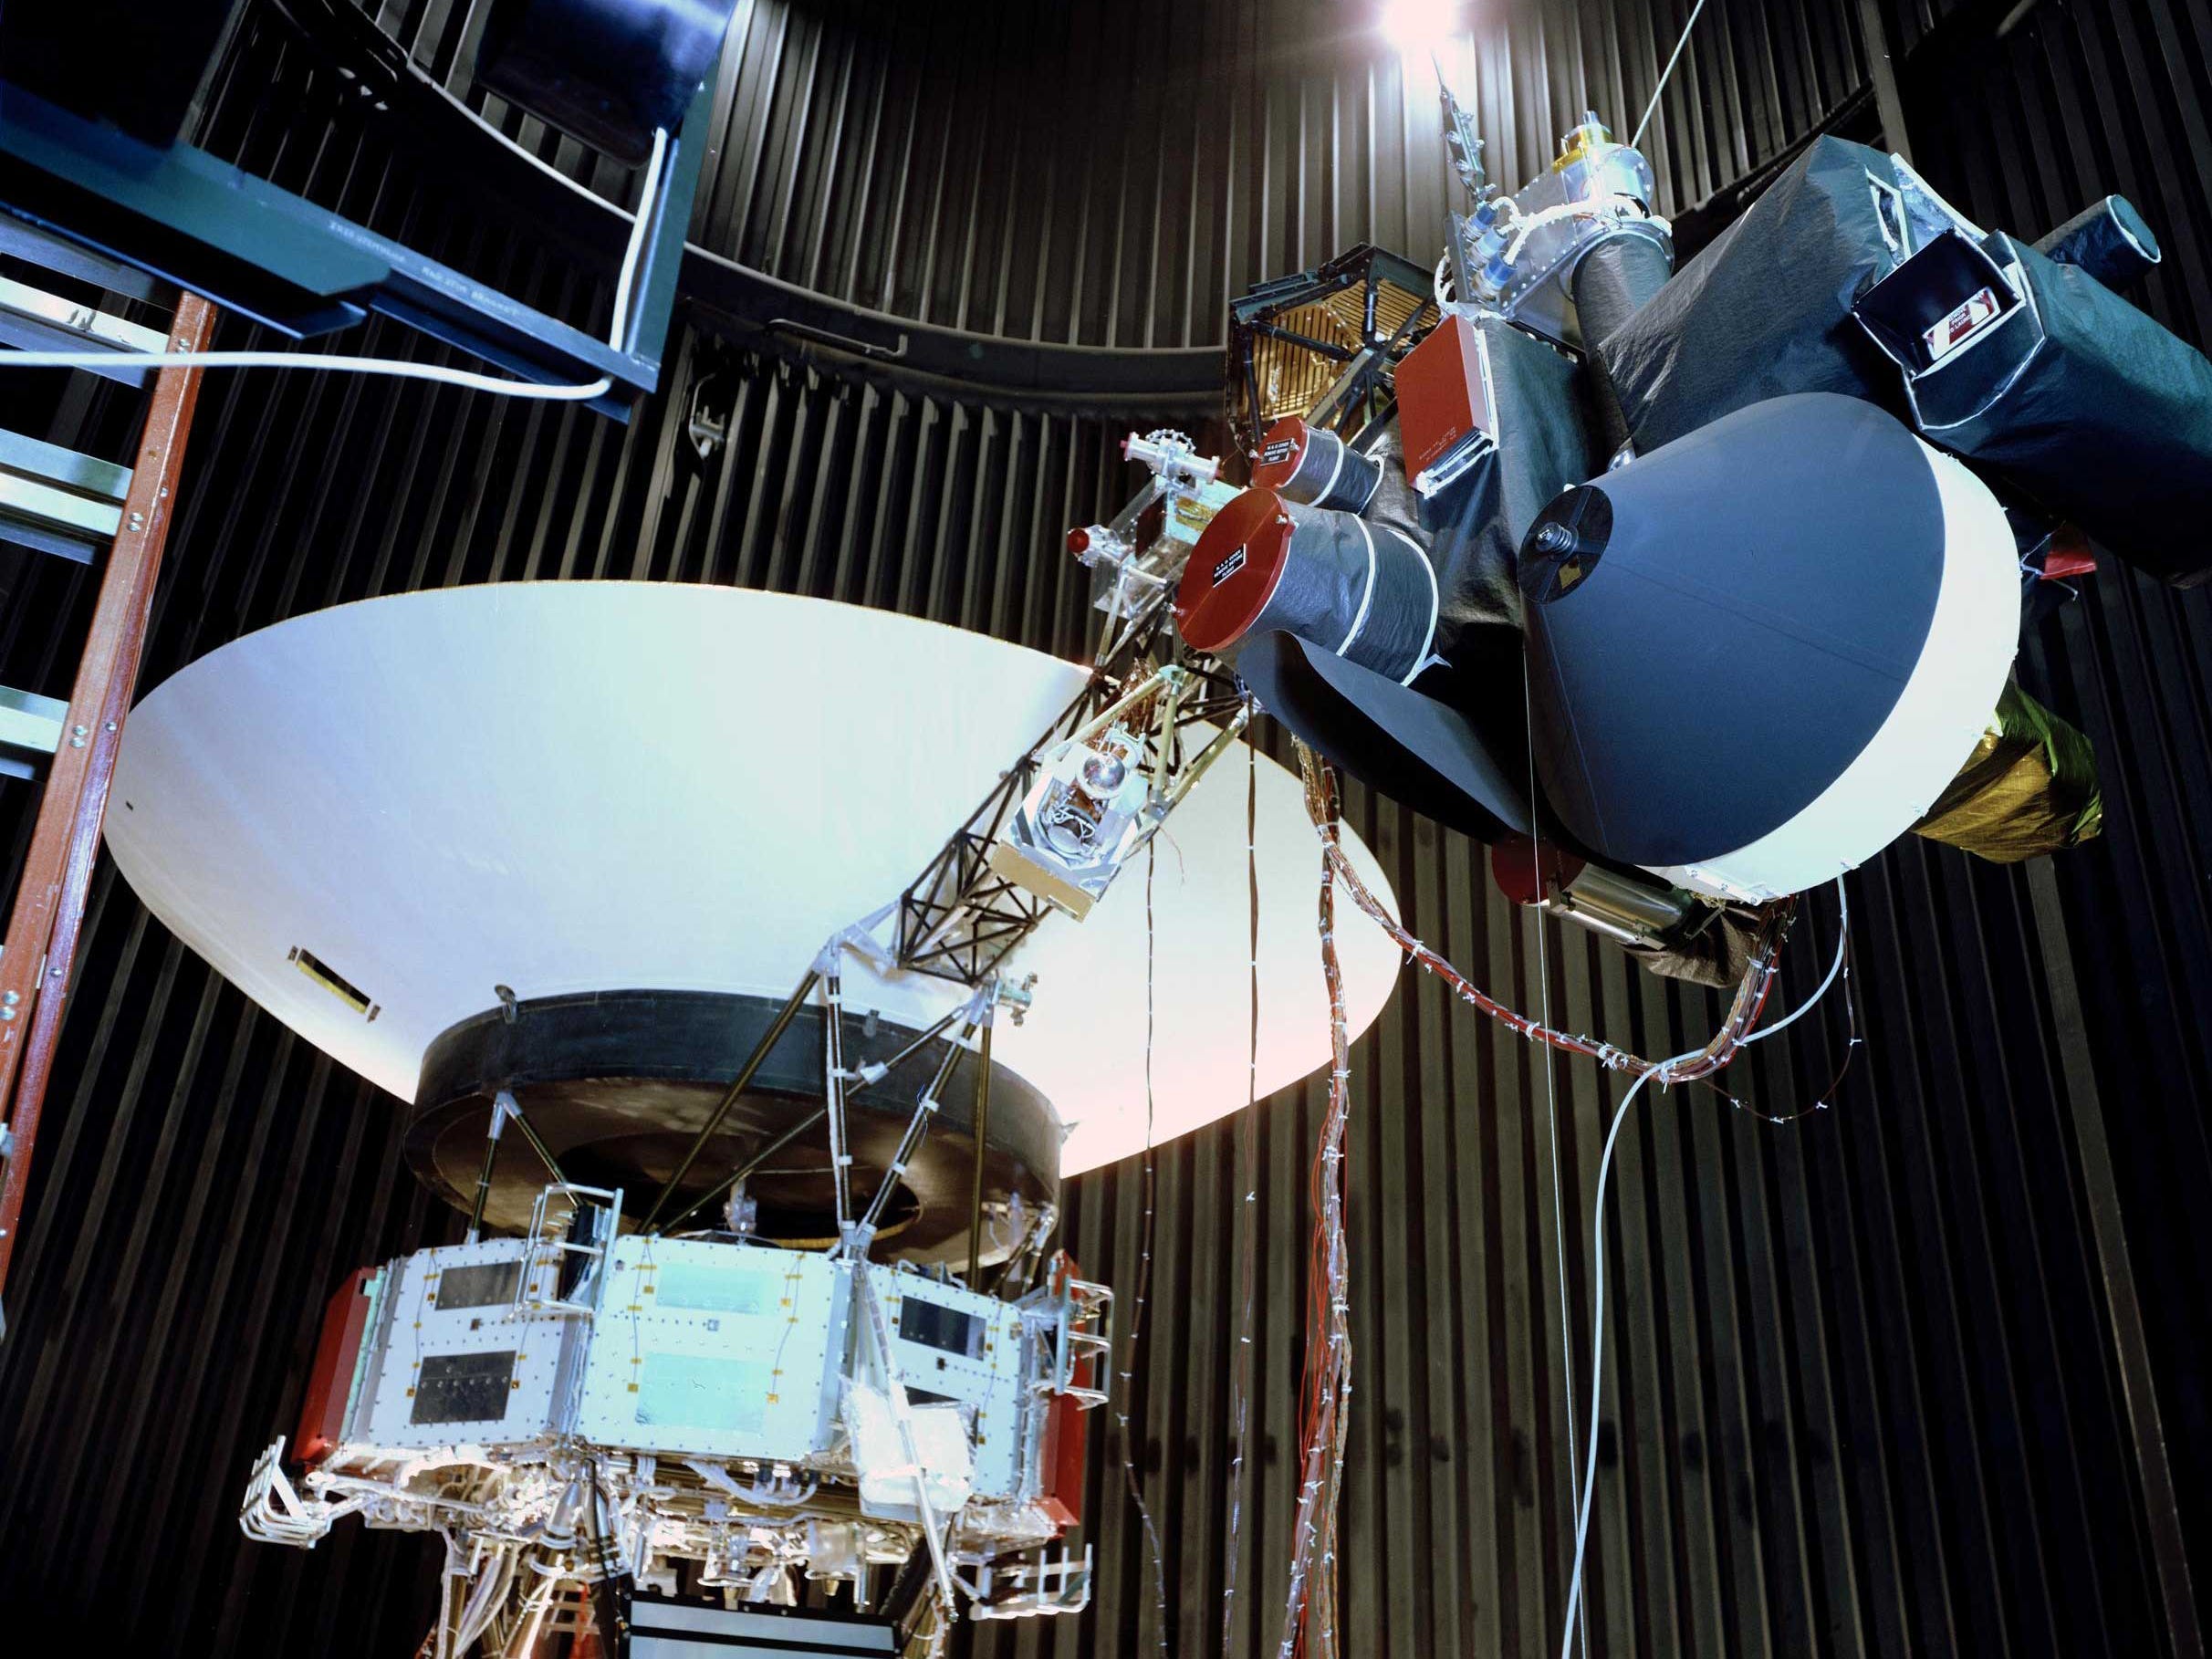 Ein Bild zeigt ein Voyager-Testmodell, das 1976 in einer Weltraumsimulatorkammer am JPL gezeigt wurde und eine Nachbildung der beiden Voyager-Raumsonden war, die 1977 gestartet wurden.